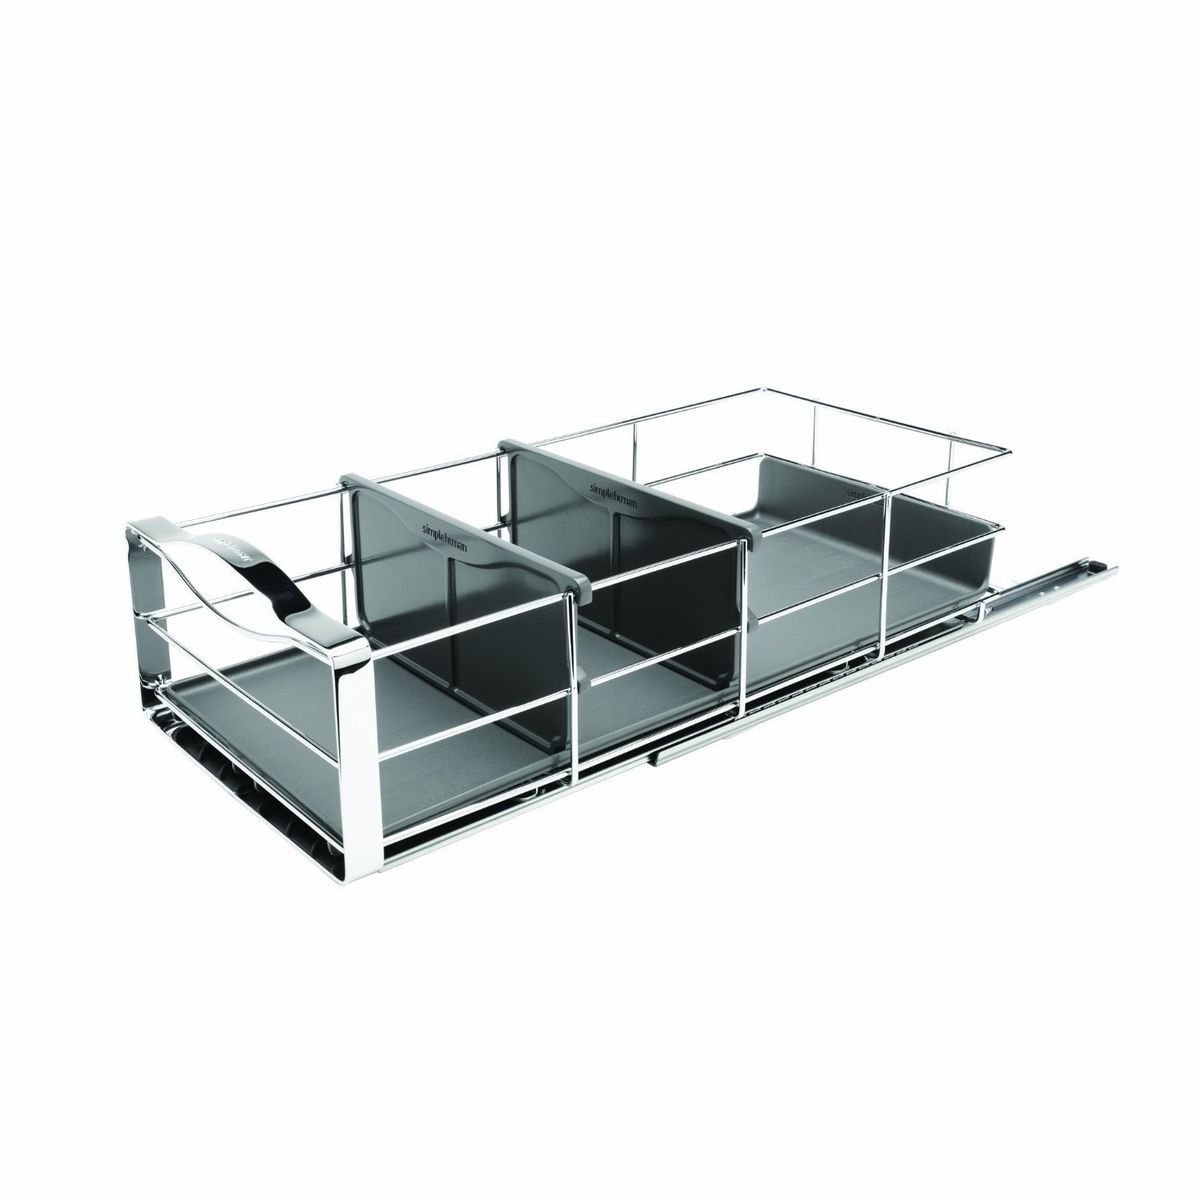  Slide Out Storage Basket Durable Kitchen Storage Organizer Efficient